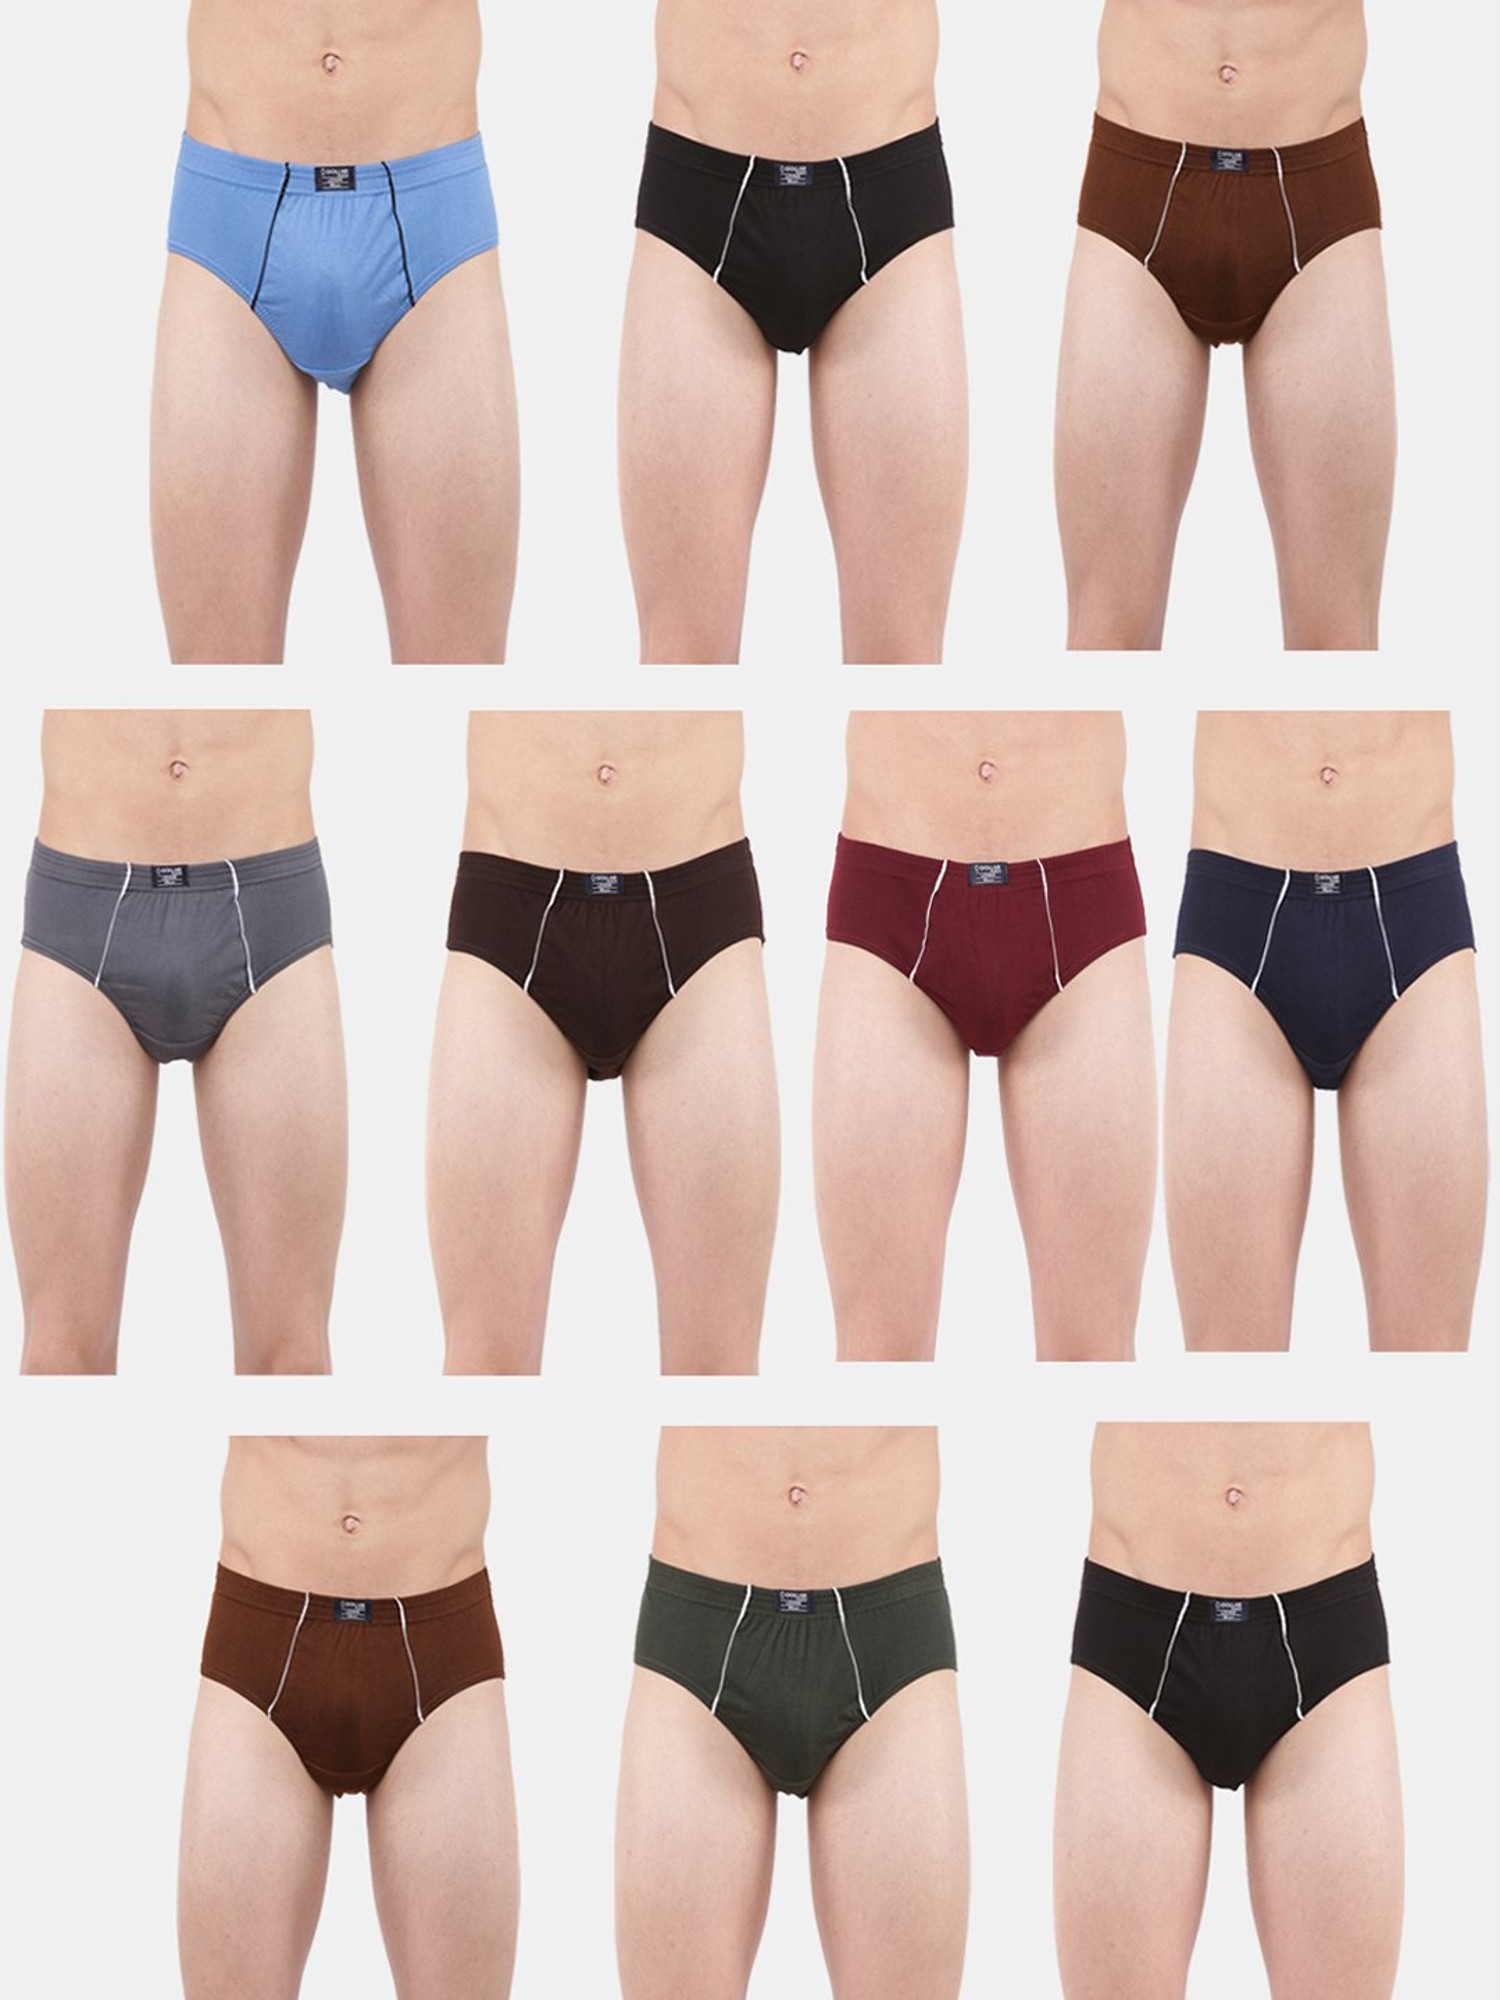 Buy Dollar Lehar Multicolor Solid Trunks (Pack of 5) for Men Online @ Tata  CLiQ